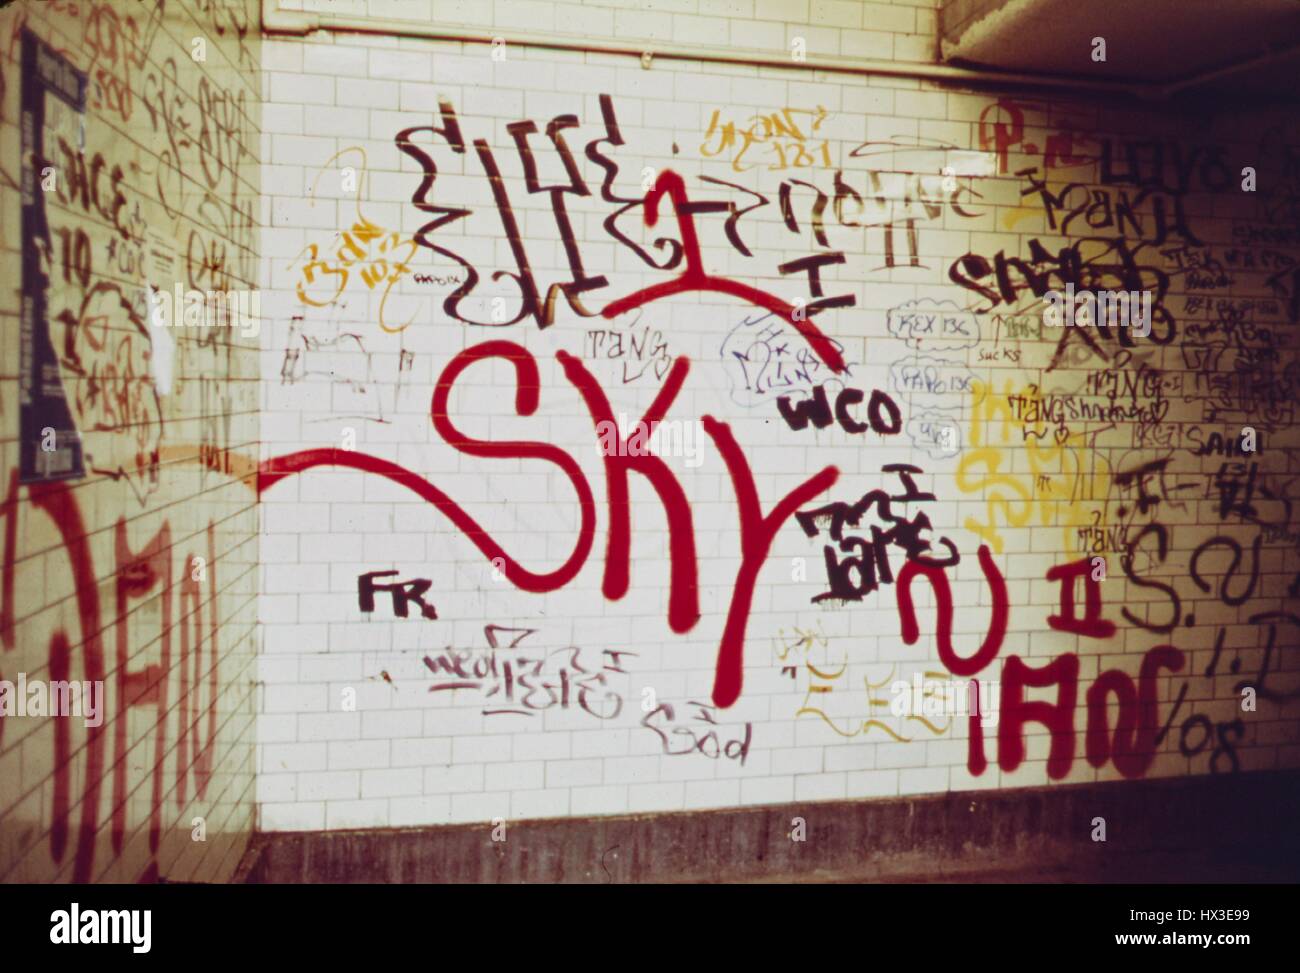 Wand von der u-Bahnstation 116th Street in East Harlem, New York City, New York mit umfangreichen Graffiti, Mai 1973. Bild mit freundlicher Genehmigung National Archives. Stockfoto